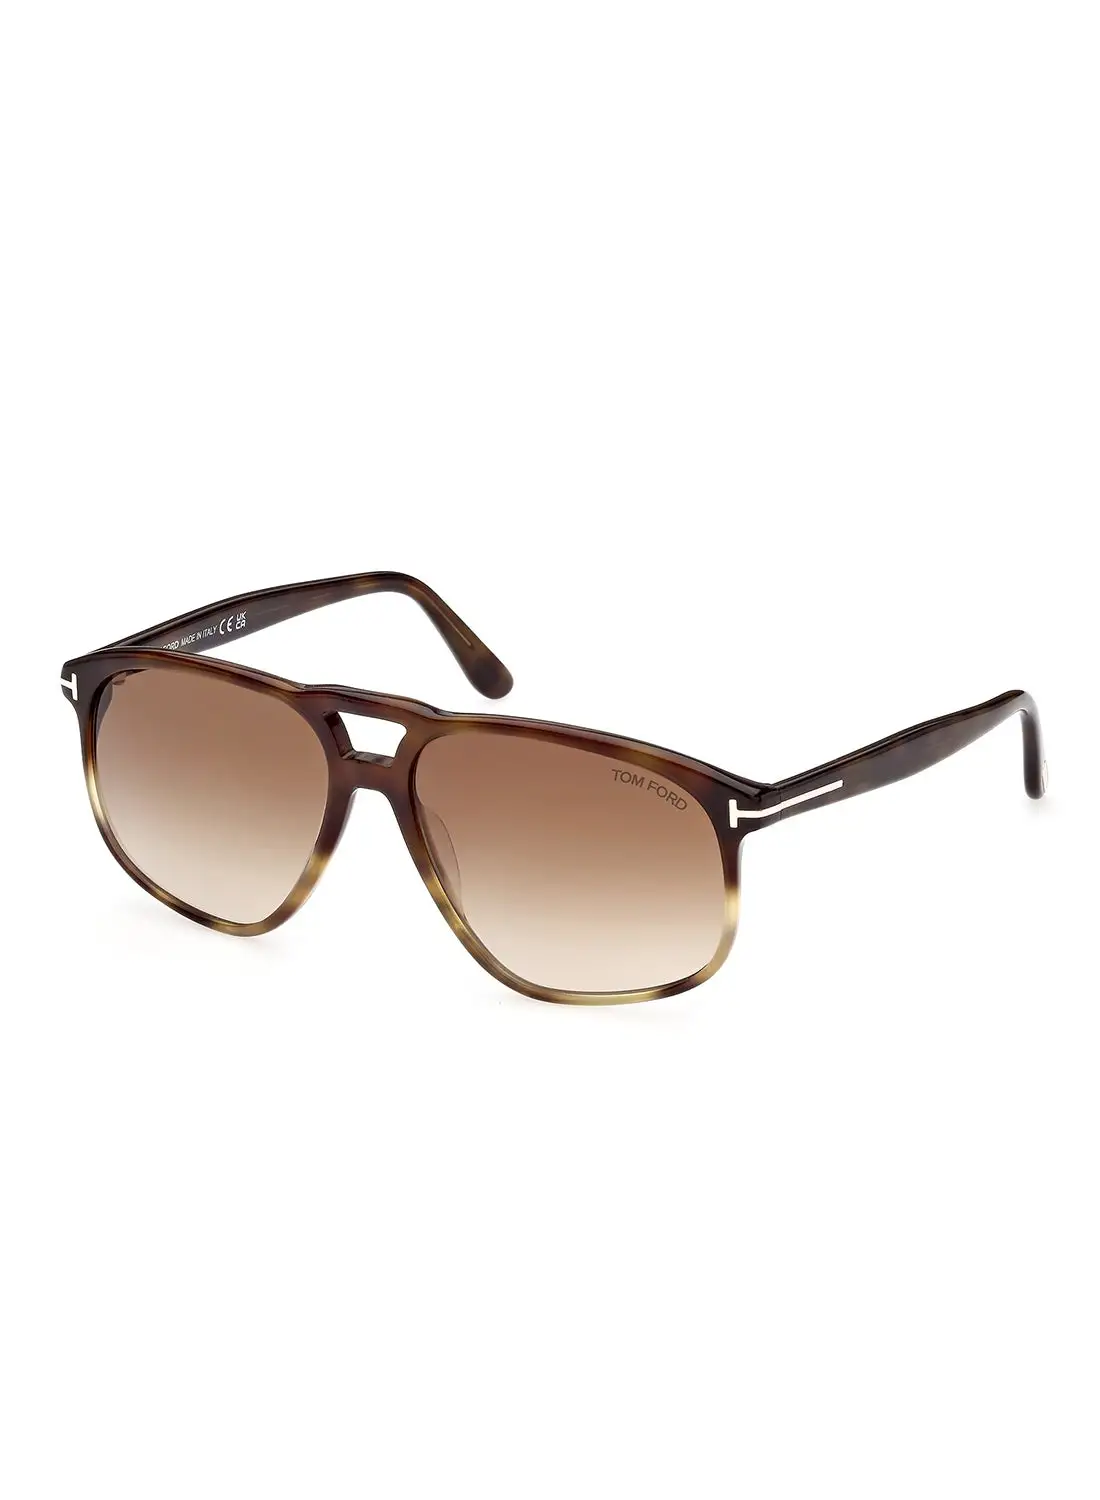 TOM FORD Men's UV Protection Navigator Sunglasses - FT100056F58 - Lens Size: 58 Mm